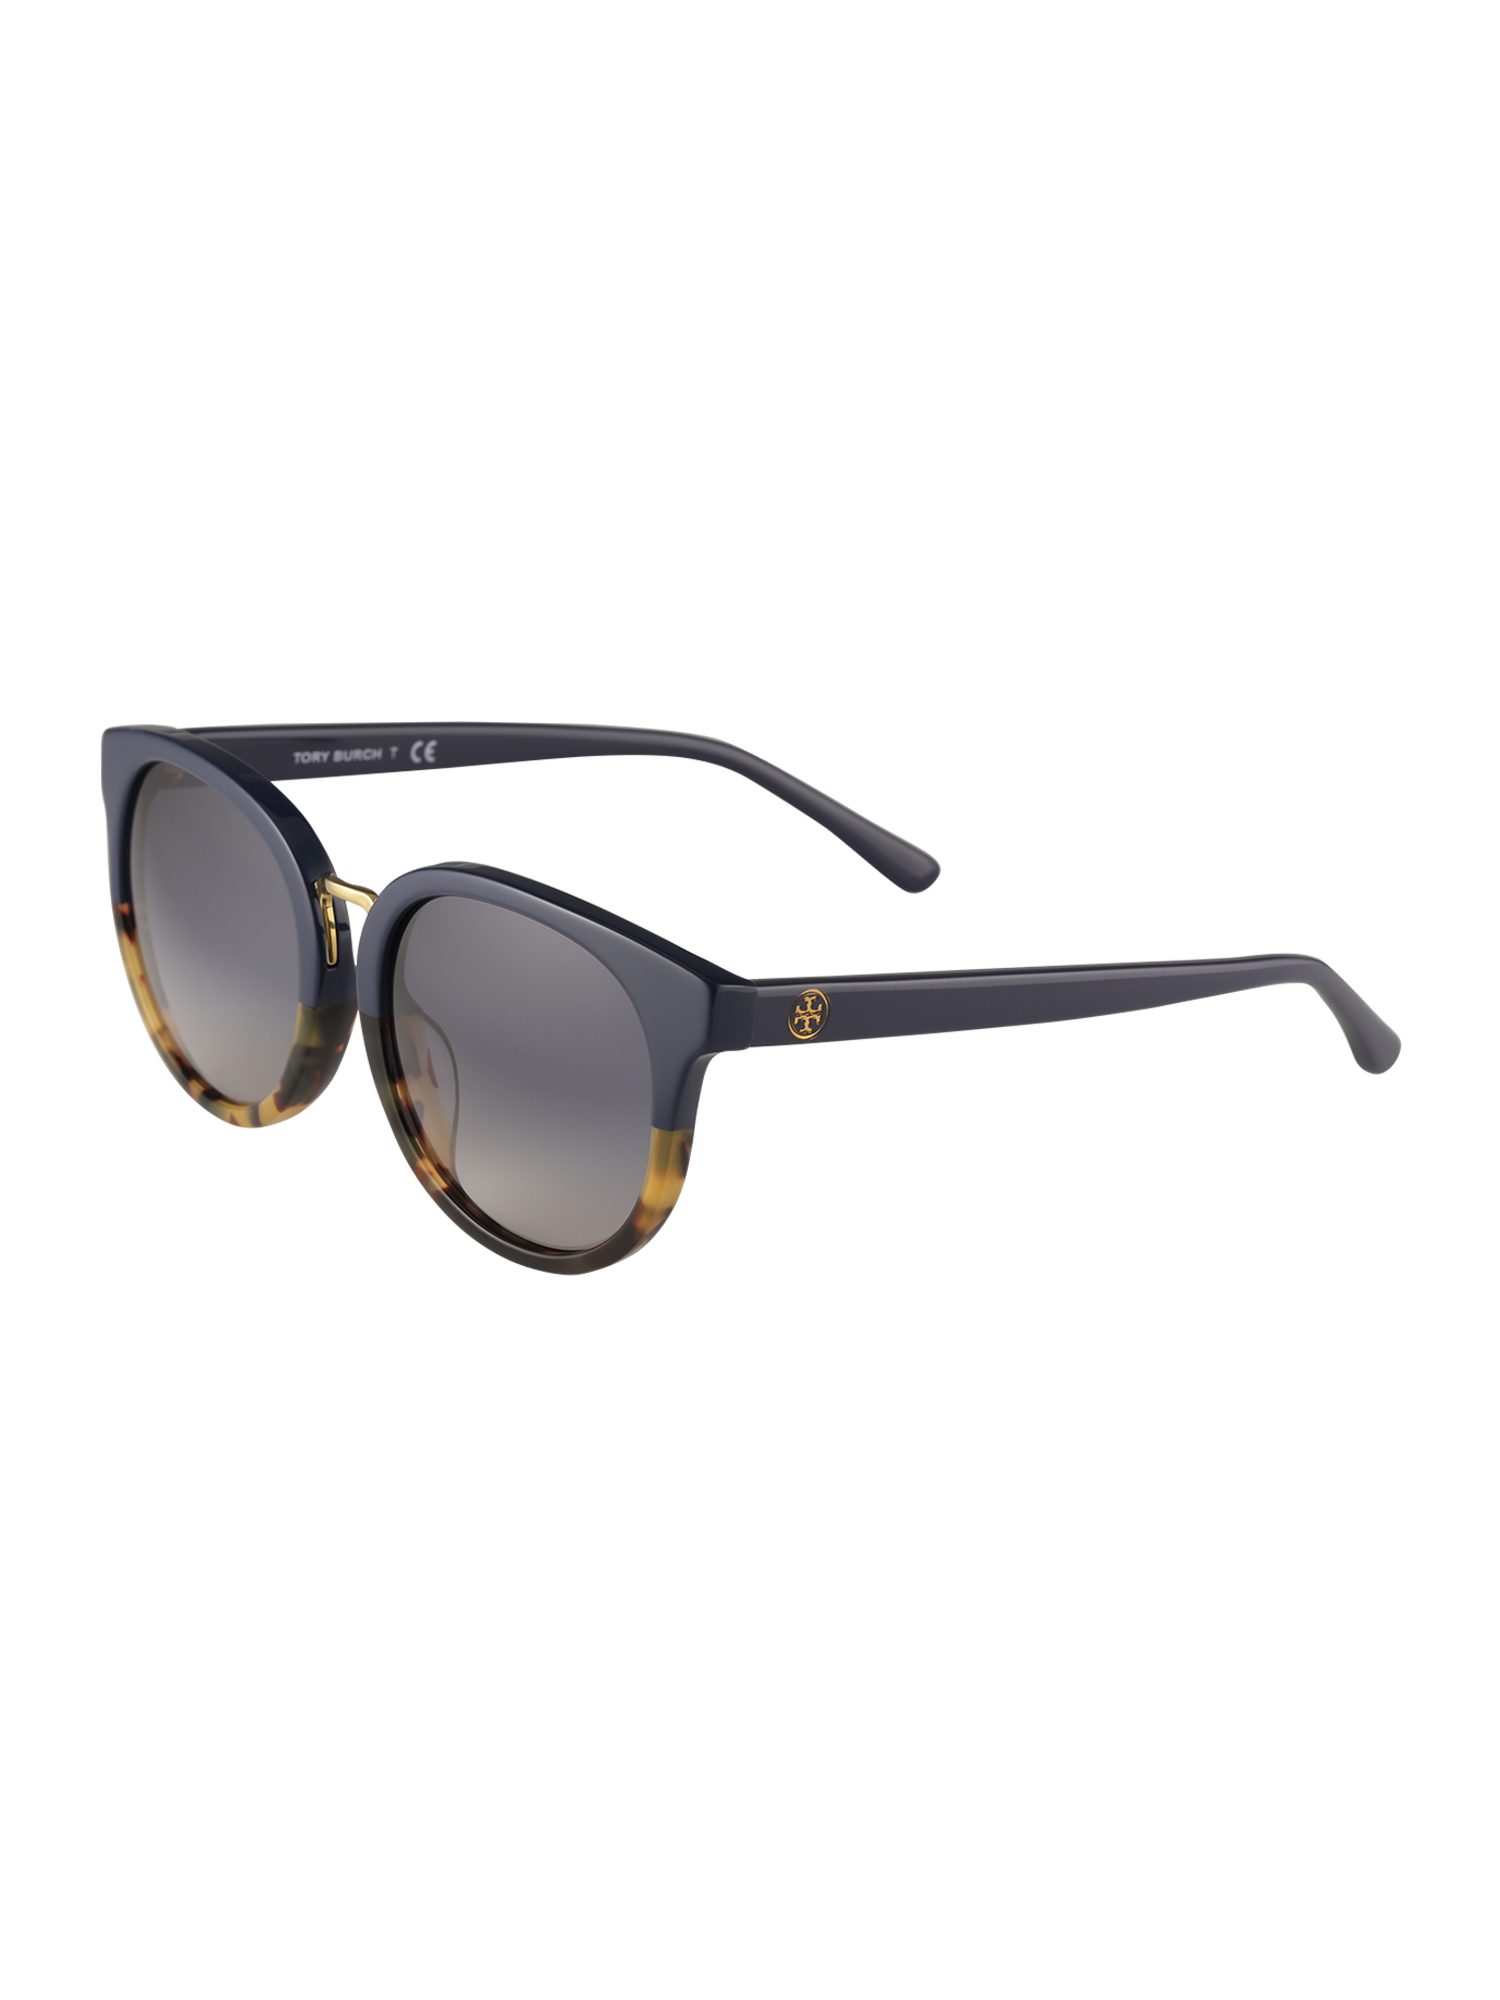 Akcesoria Akcesoria Tory Burch Okulary przeciwsłoneczne 0TY7153U w kolorze Granatowym 